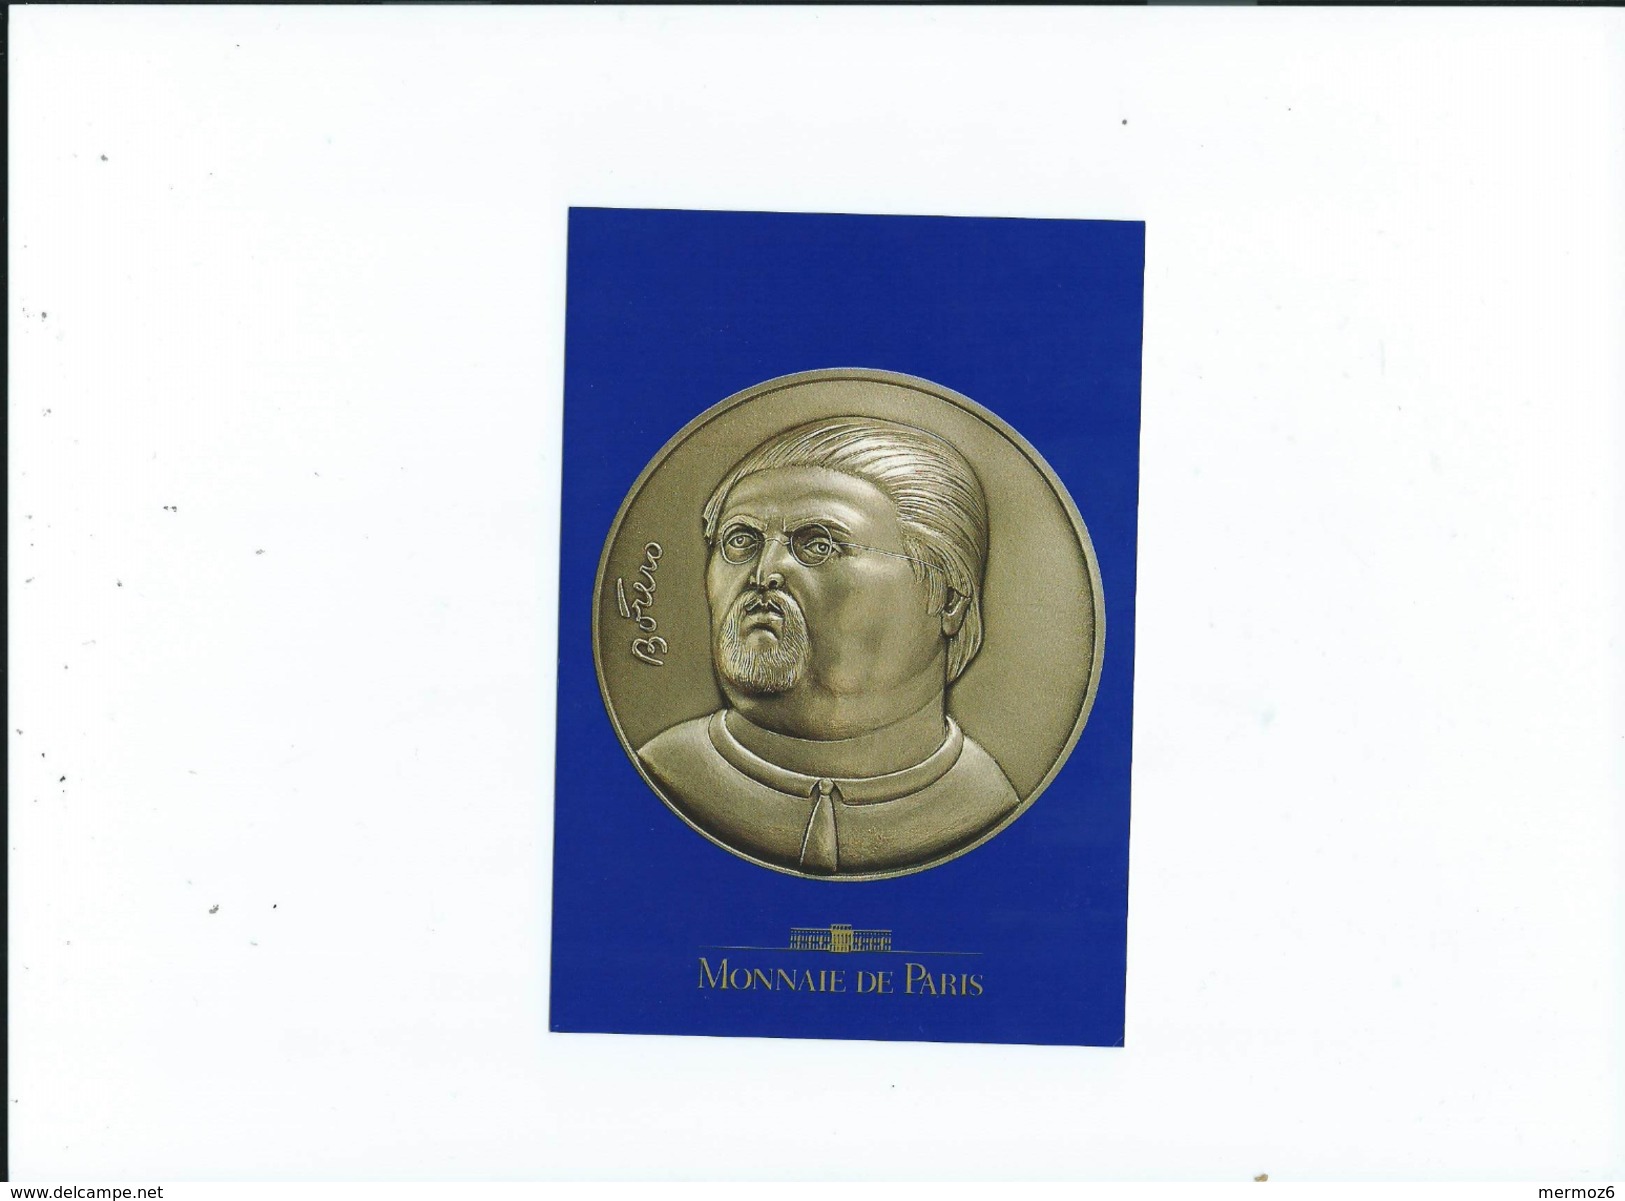 Monnaie De Paris 1992 Botero Autoportrait Medaille - Monnaies (représentations)